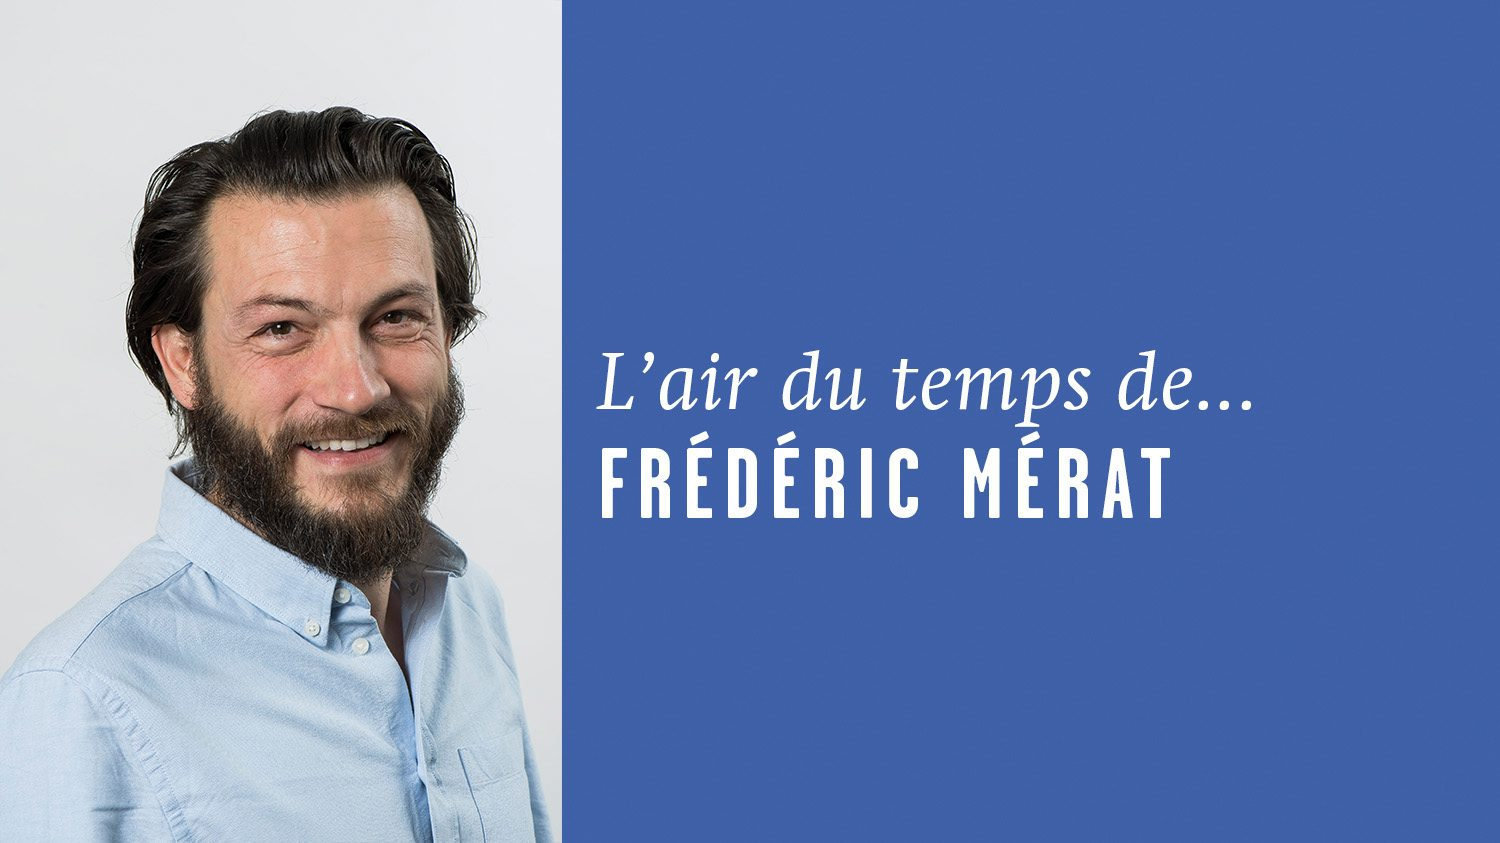 AirDutemps-FredericMerat (11)